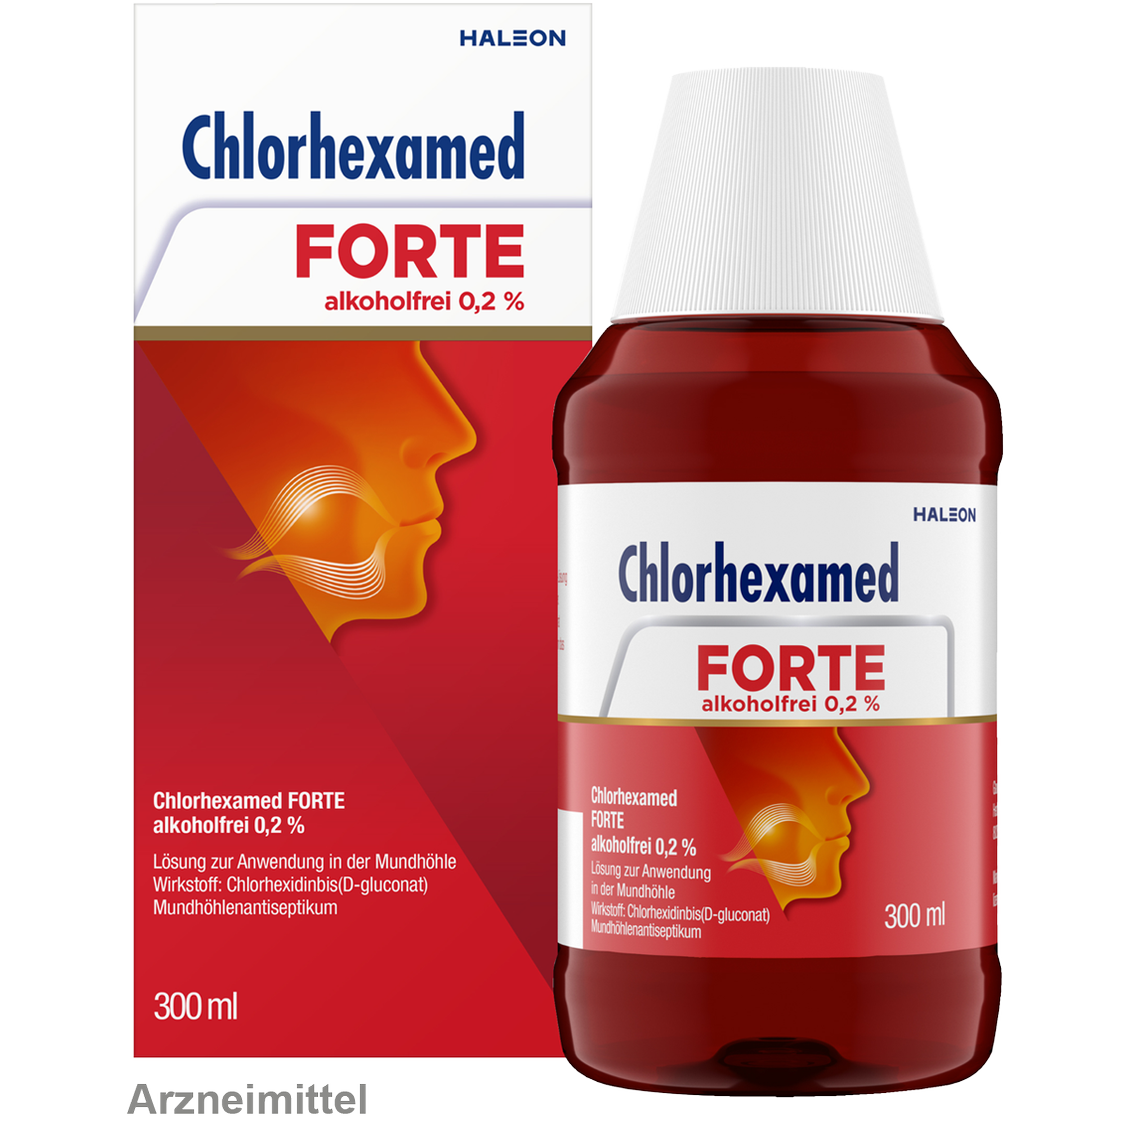 Chlorhexamed FORTE alkoholfrei 0,2 % zur vorübergehenden Behandlung bei Zahnfleischentzündung